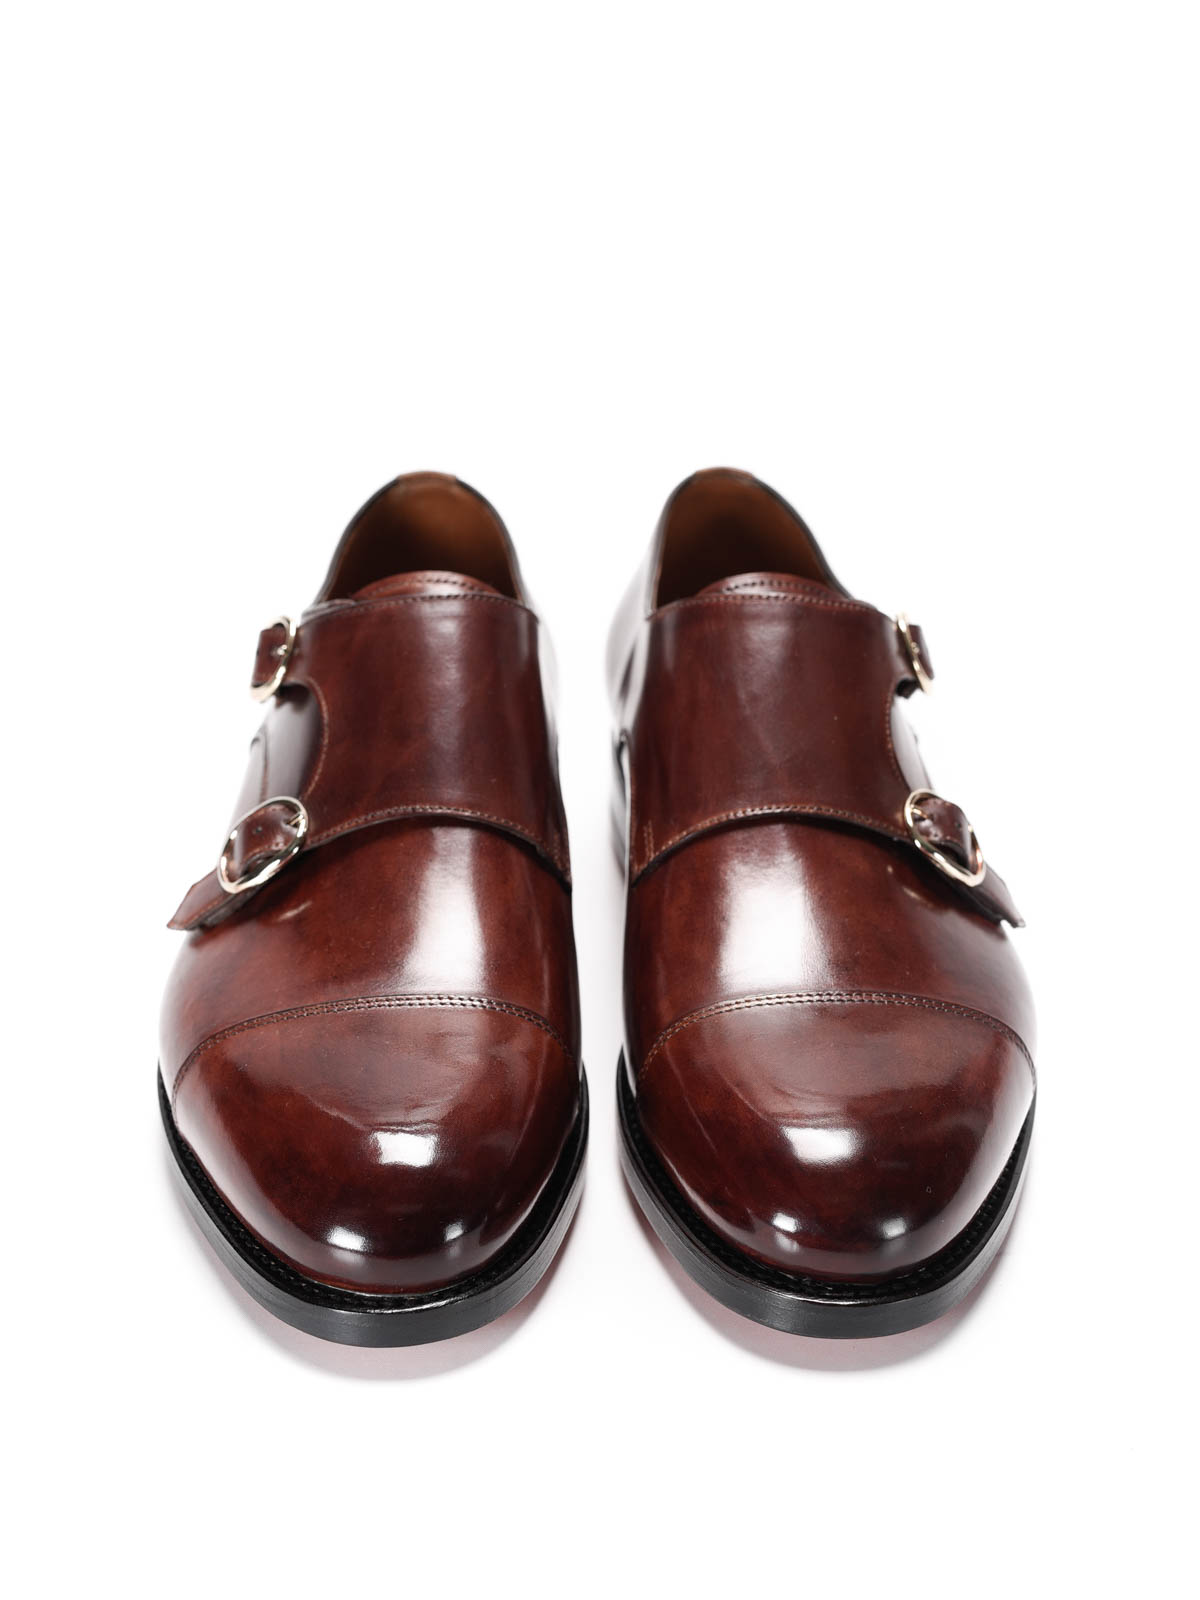 monk strap shoes online